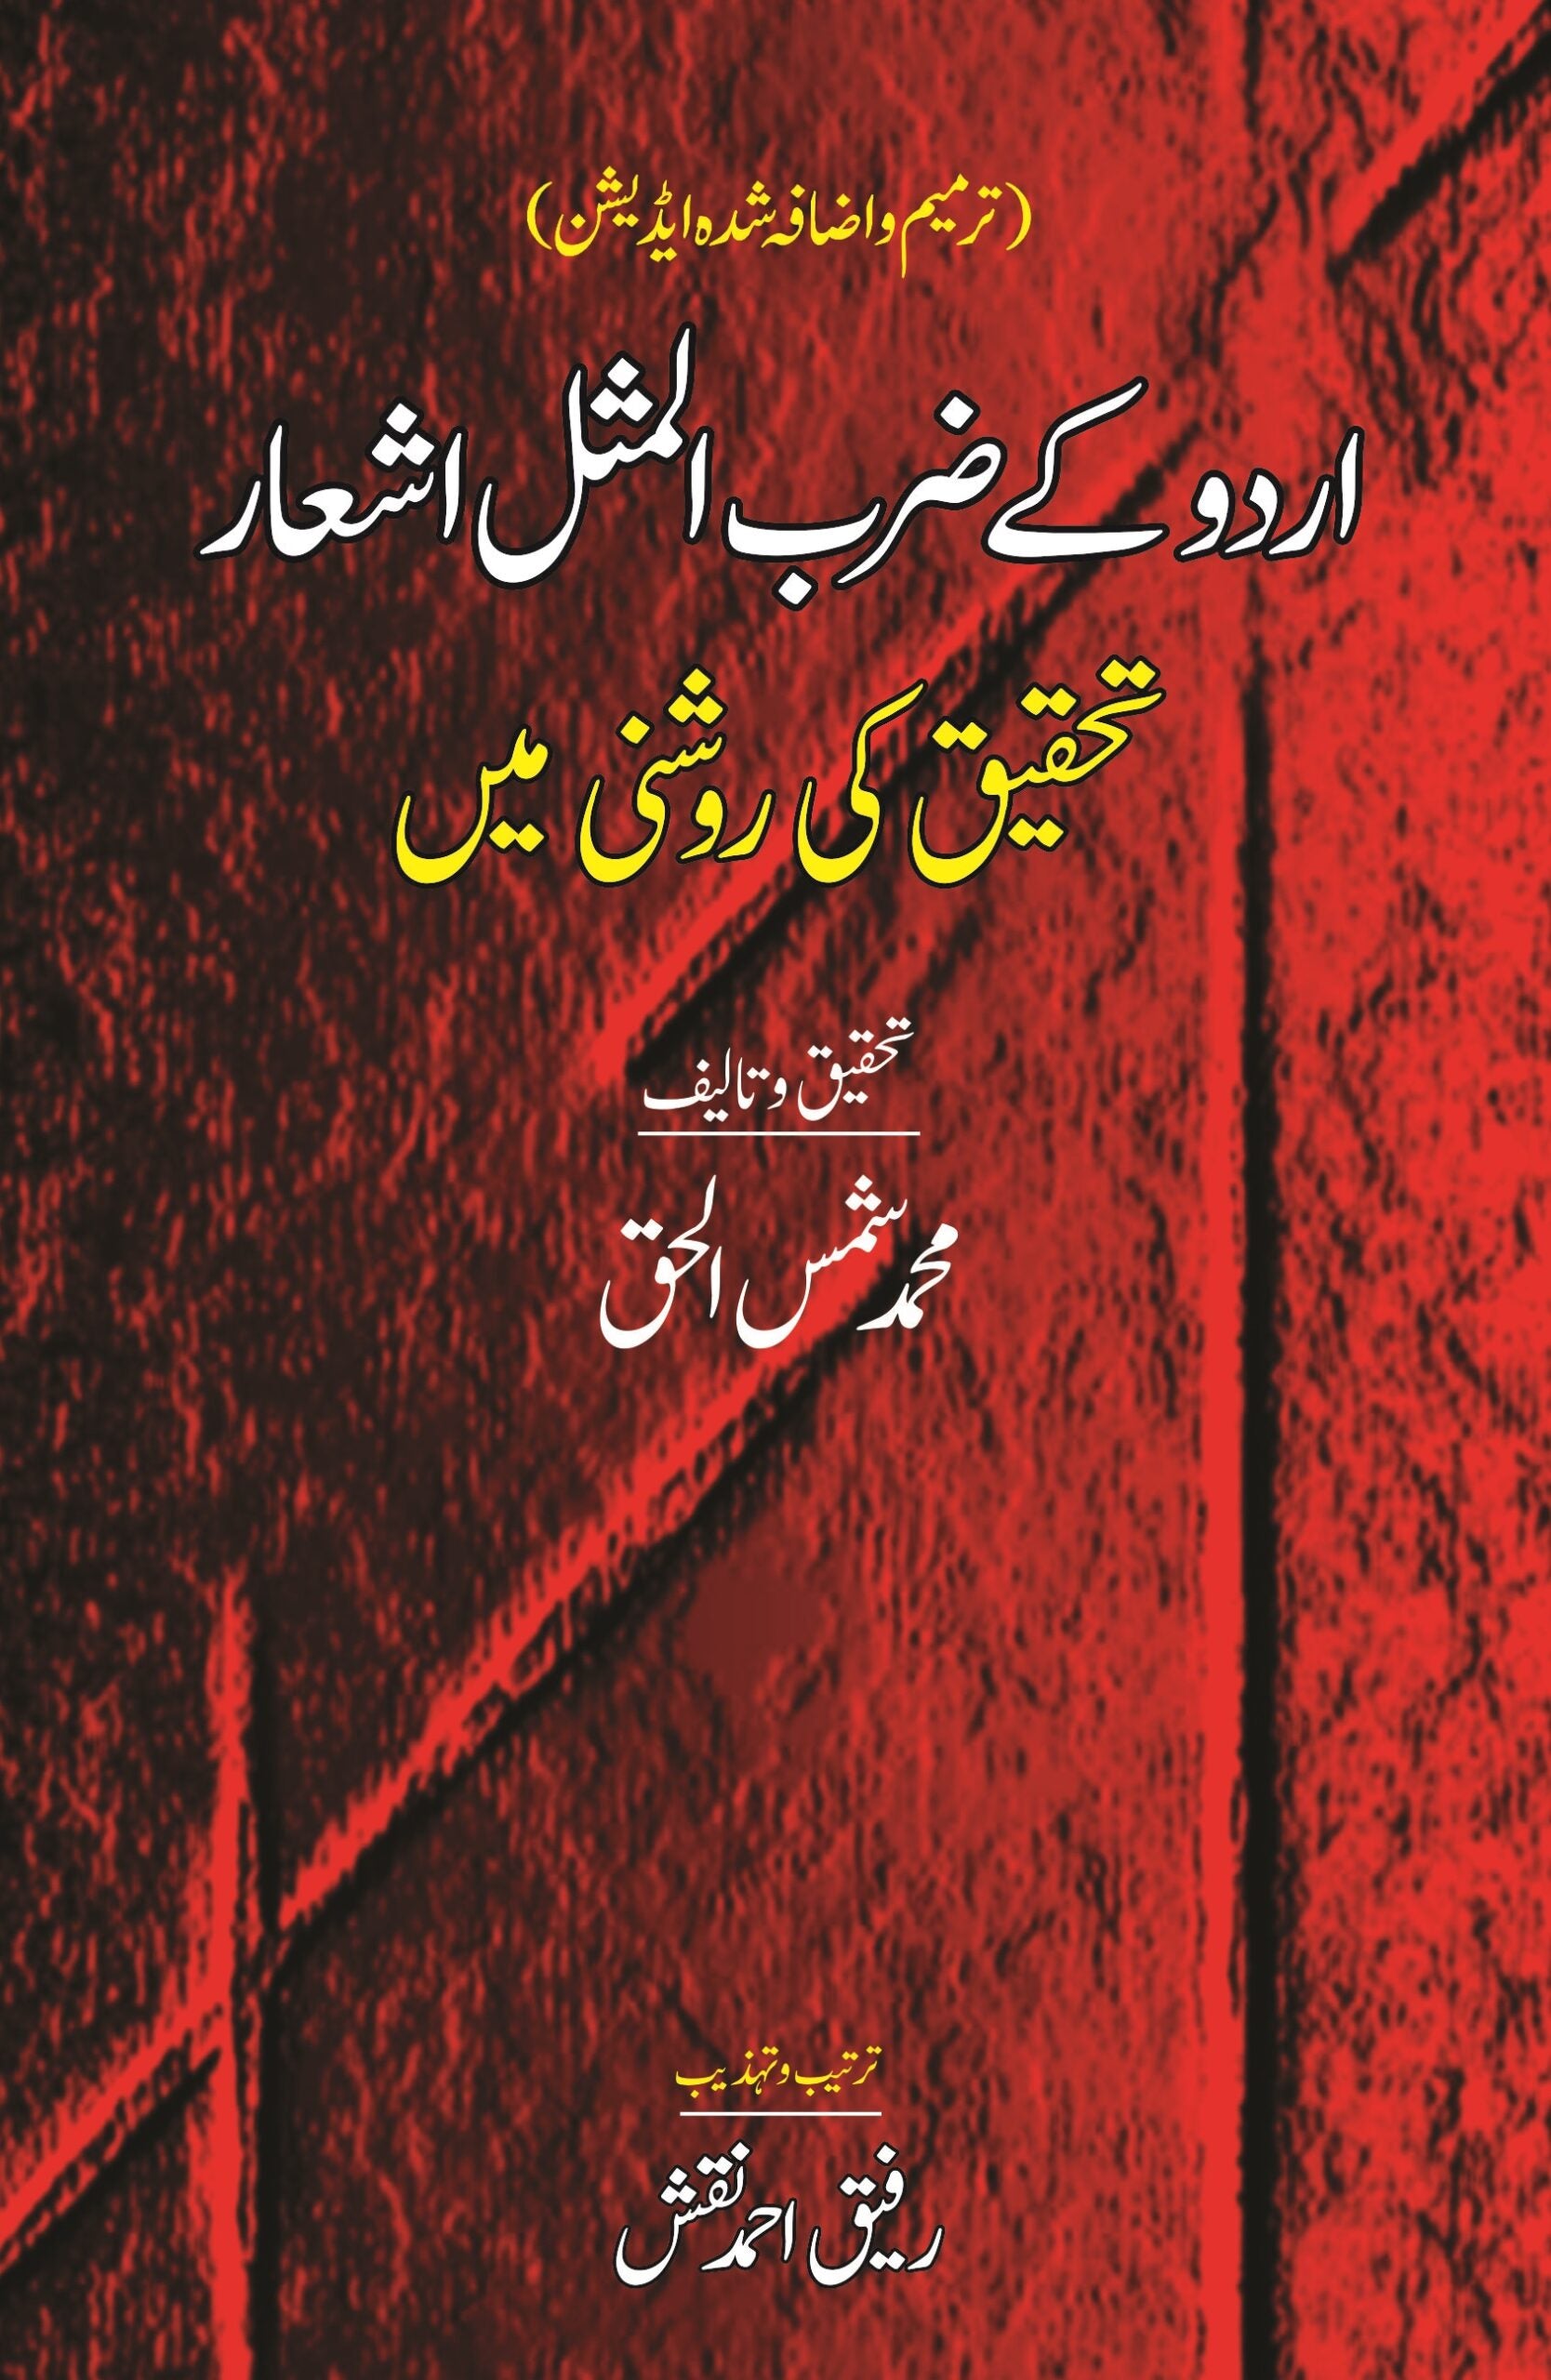 اردو کے ضرب المثال اشعار | Urdu Kay Zarab Almsal Ashar Fiction House